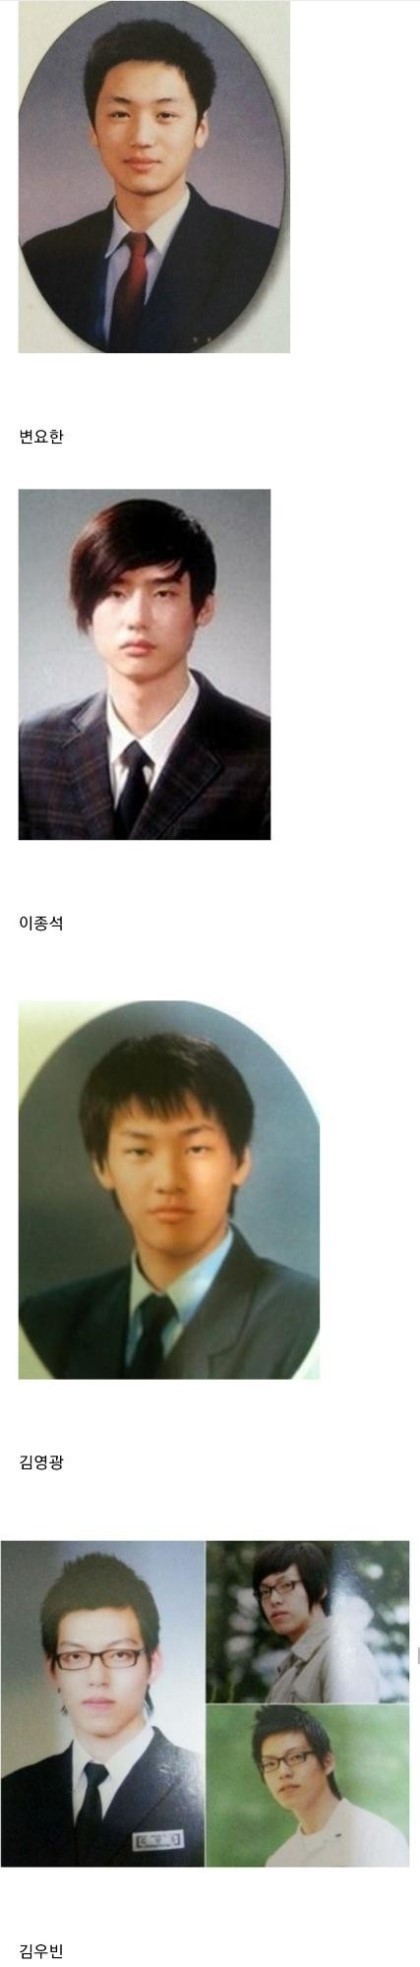 nokbeon.net-한국 남자배우들 졸업사진.jpg-2번 이미지